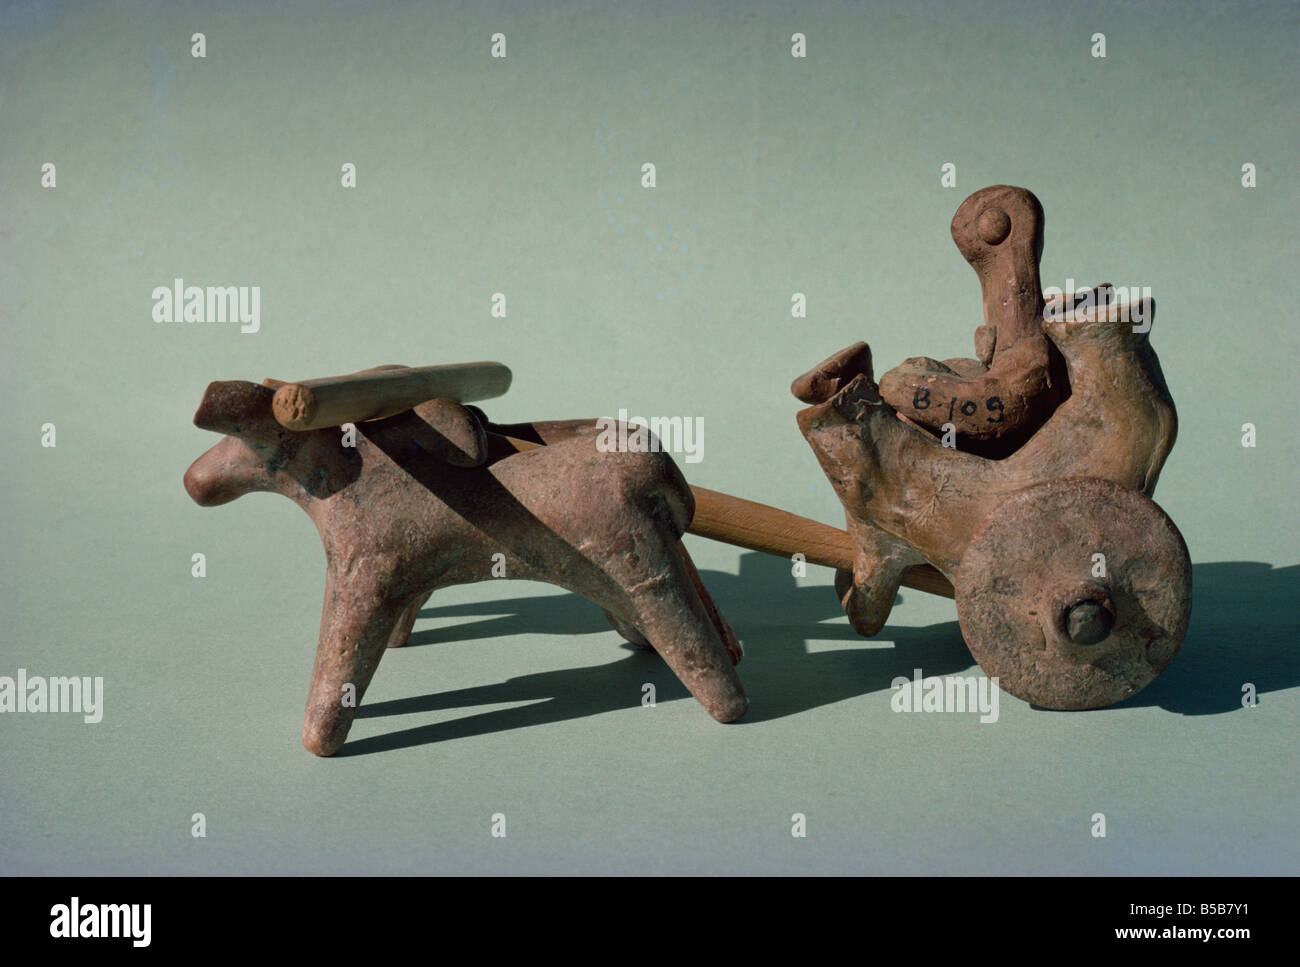 La figure dans un chariot ou panier dessiné par les animaux de la civilisation de l'Indus à Mohenjodaro dans le musée de Karachi Pakistan Asie Banque D'Images